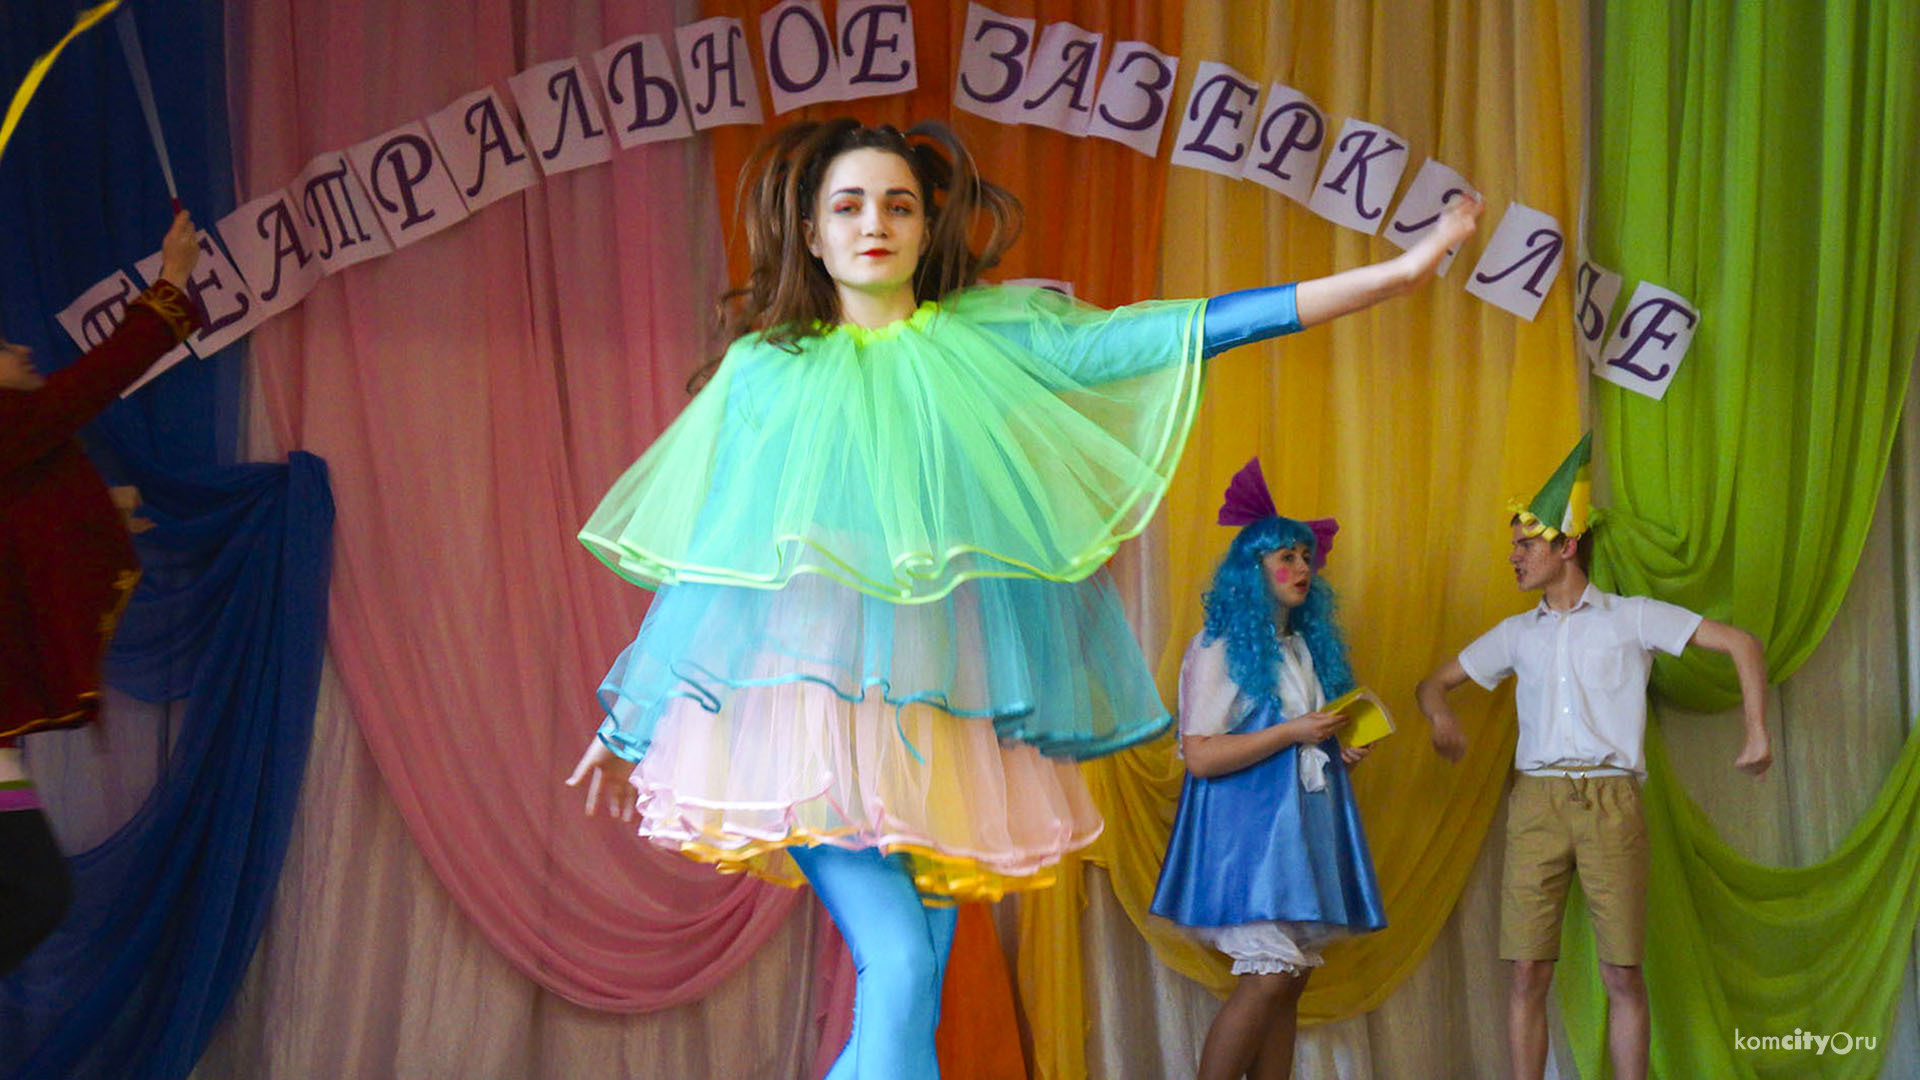 21 спектакль покажут в Комсомольске-на-Амуре на фестивале «Театральное Зазеркалье»